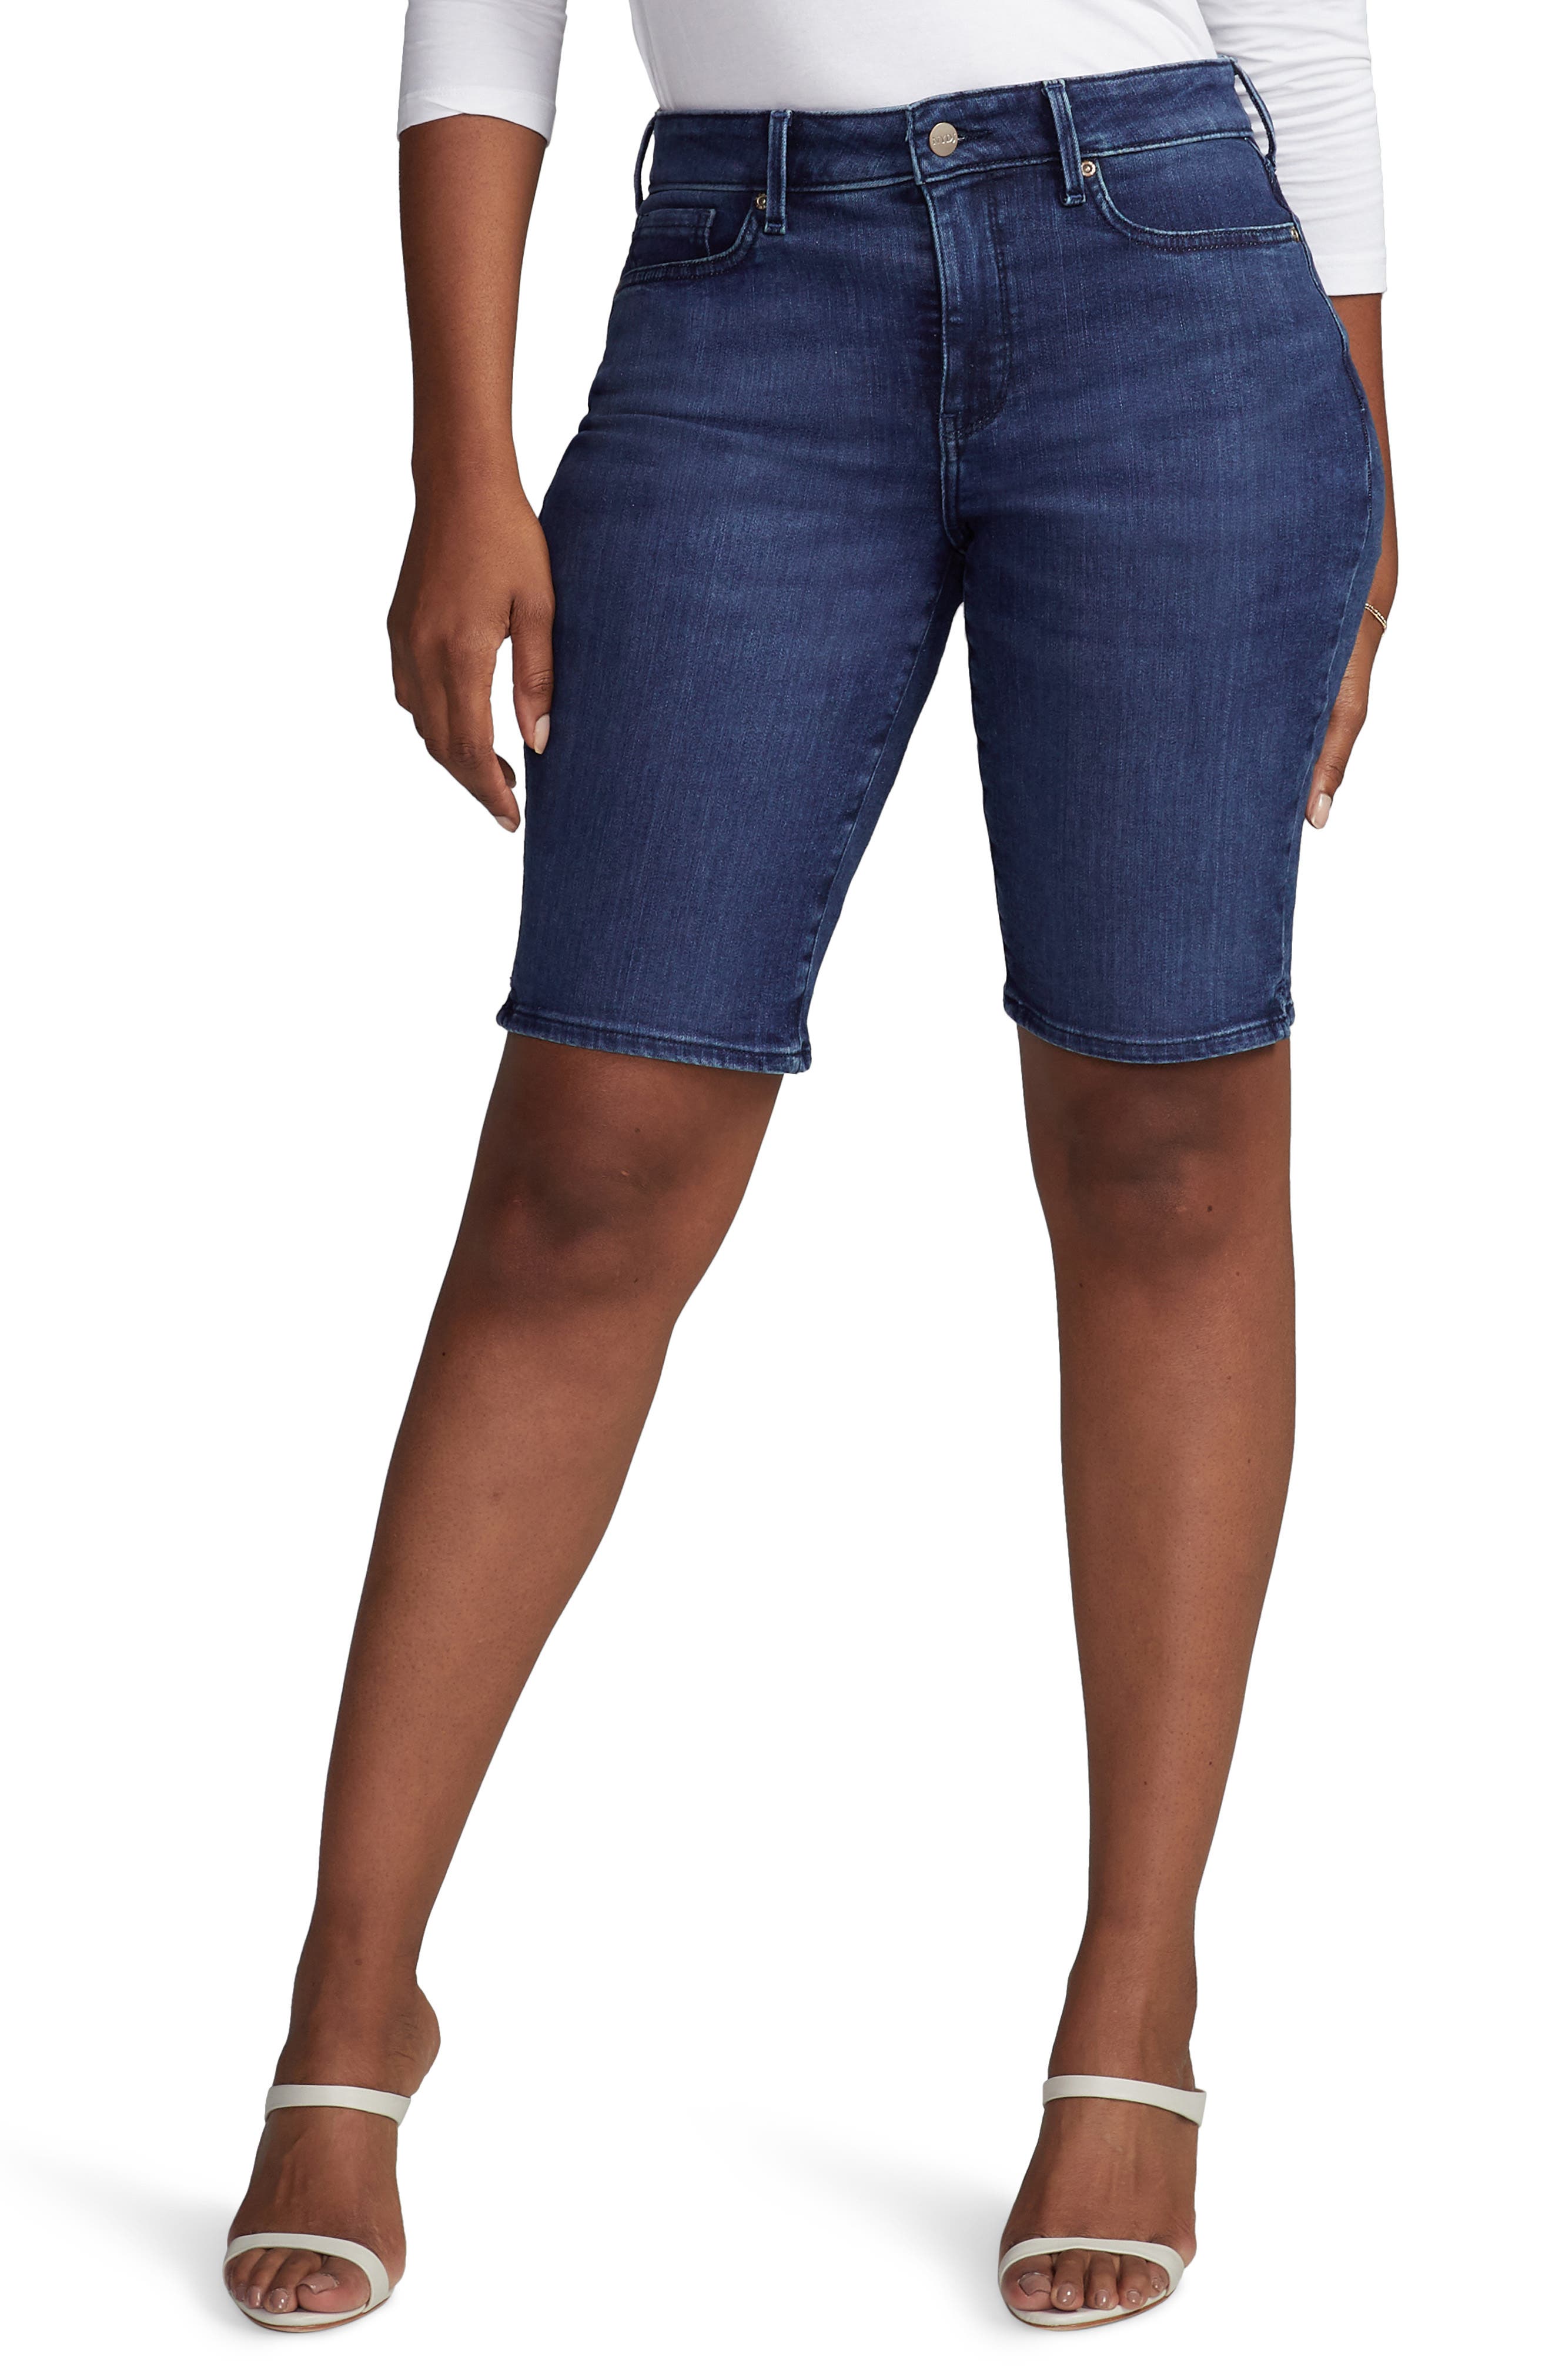 women's bermuda denim shorts